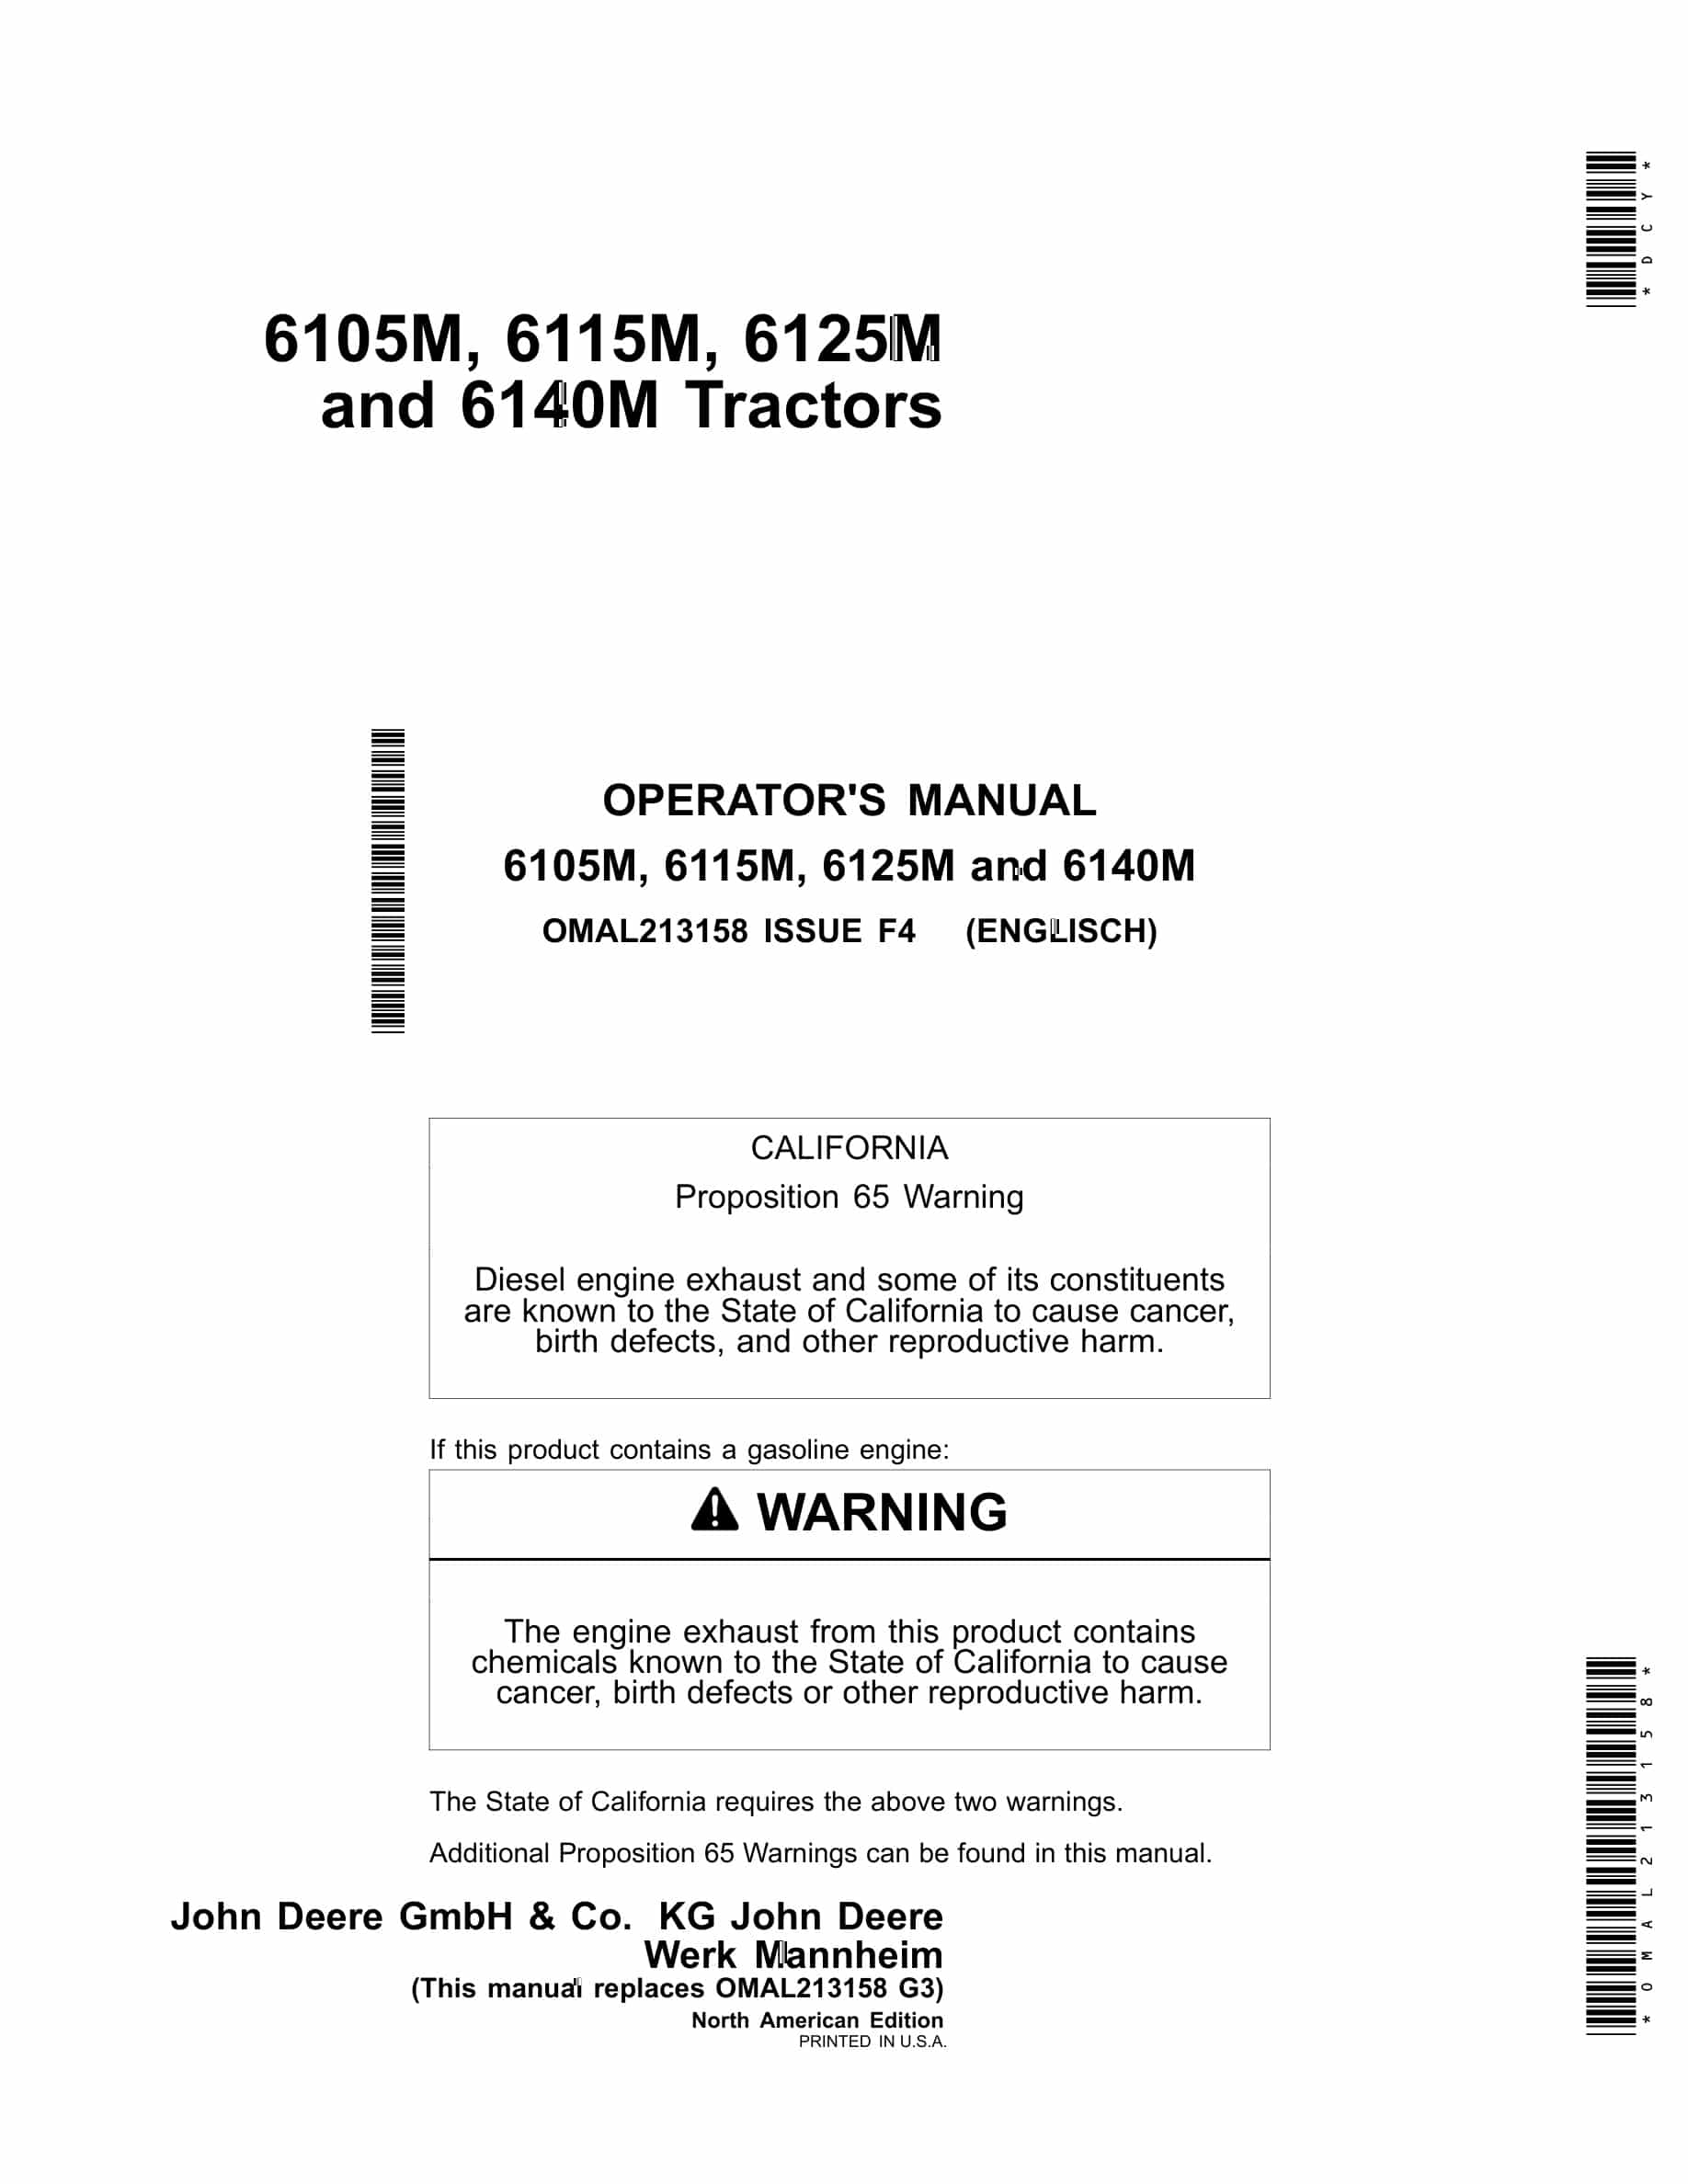 John Deere 6105M, 6115M, 6125M and 6140M Tractor Operator Manual OMAL213158-1